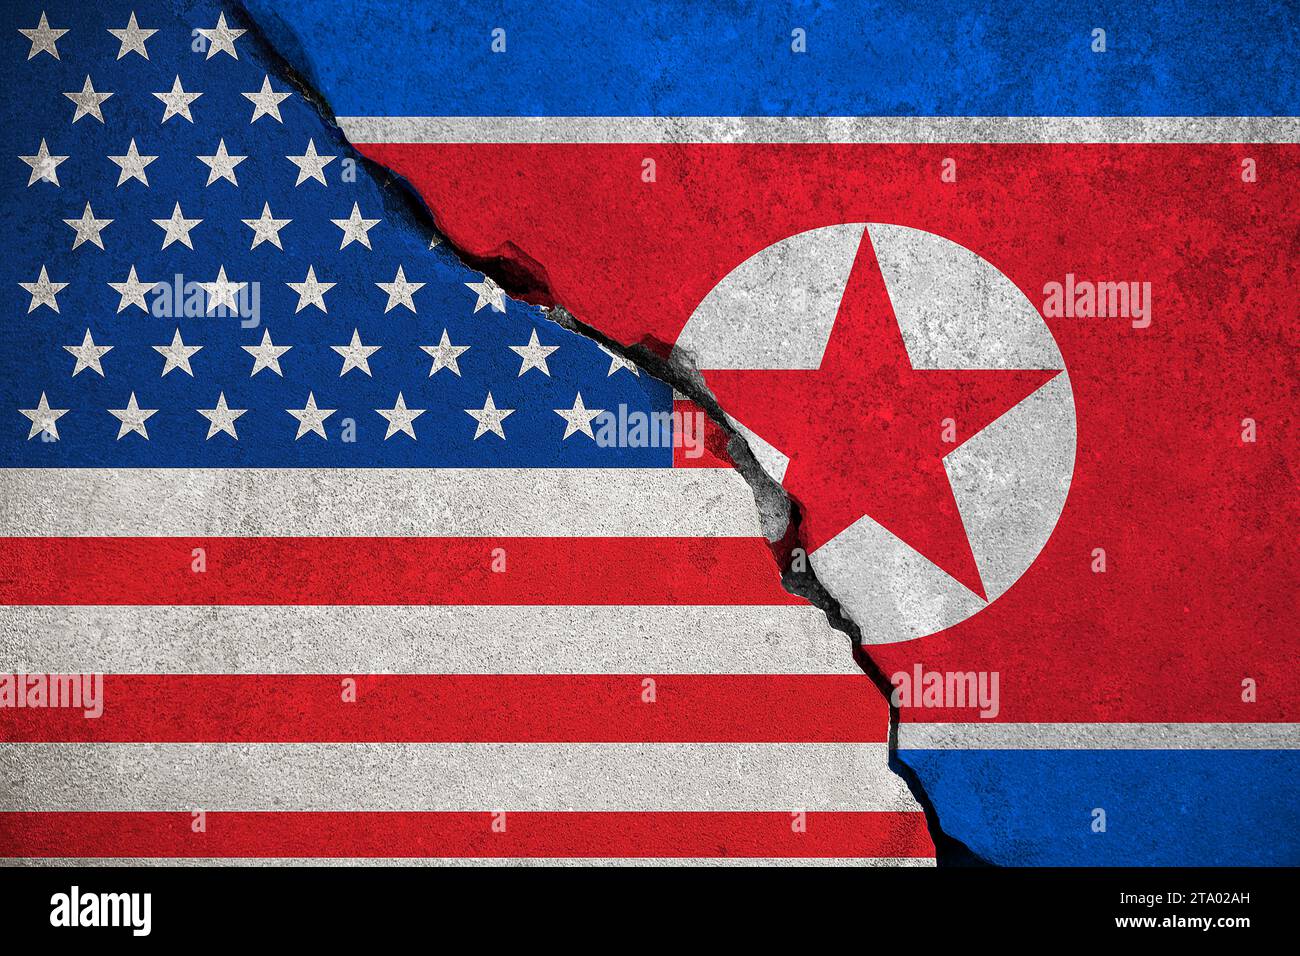 drapeau de la corée du nord sur le mur de briques brisé et la moitié des états-unis d'amérique drapeau, crise trump président et nord-coréen pour le concept de guerre de risque de bombe atomique nucléaire Banque D'Images